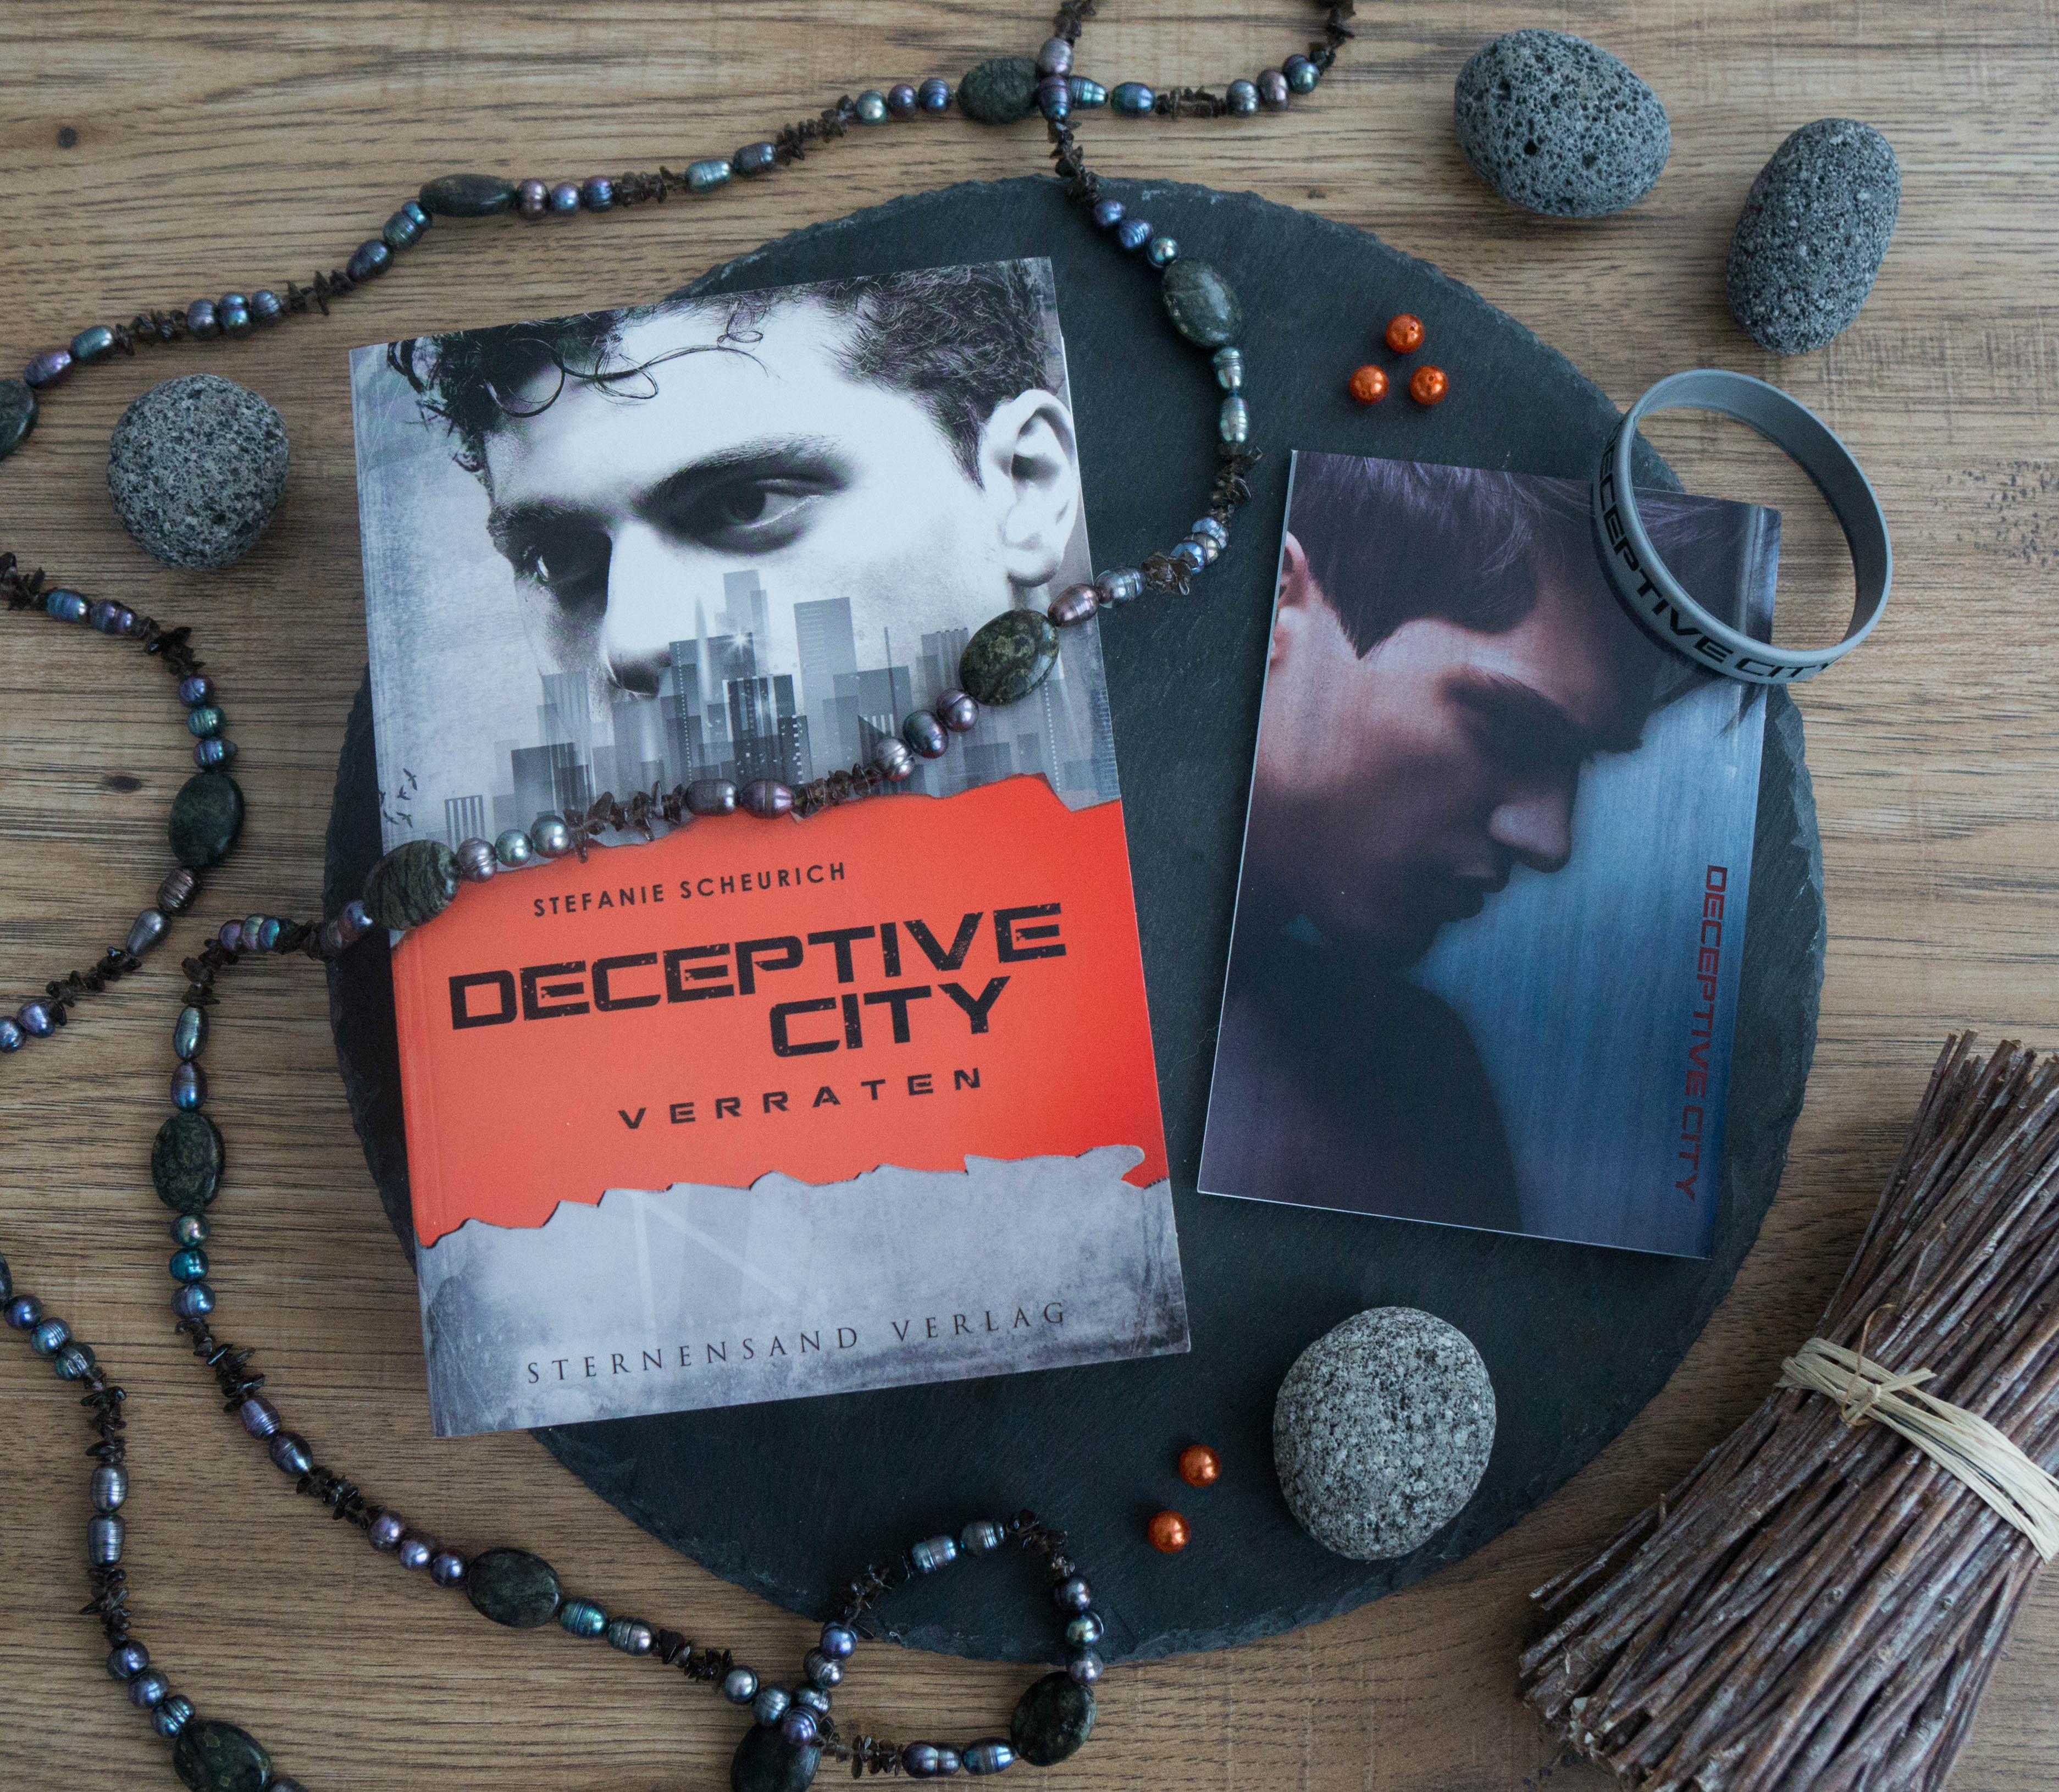 Deceptive City: Verraten – Stefanie Scheurich graphic